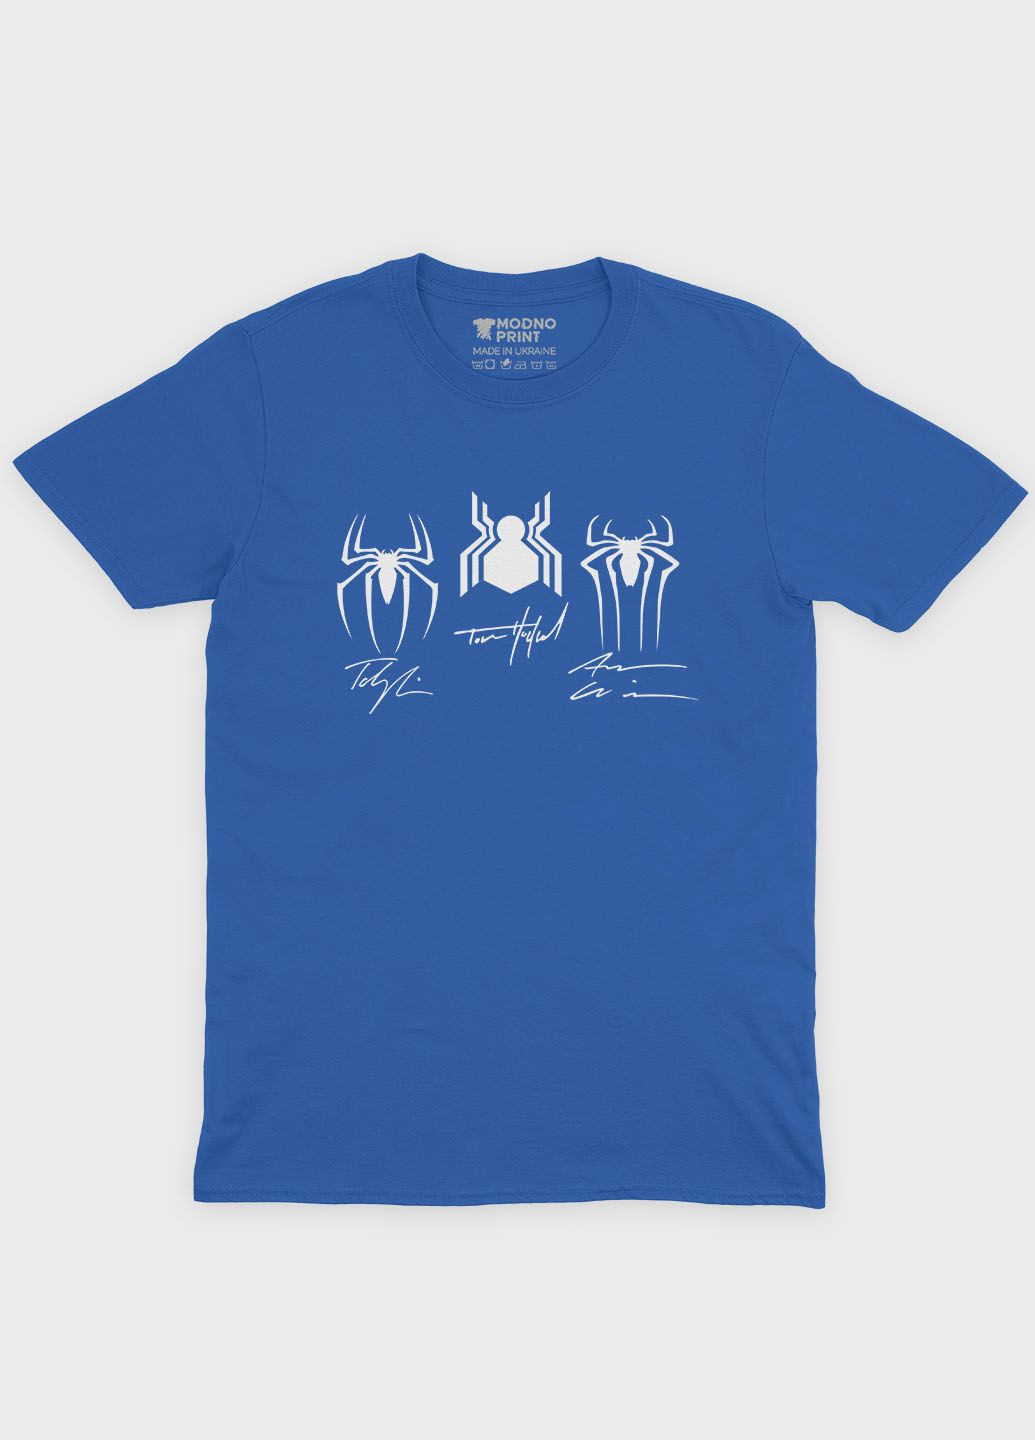 Синяя демисезонная футболка для девочки с принтом супергероя - человек-паук (ts001-1-grr-006-014-098-g) Modno